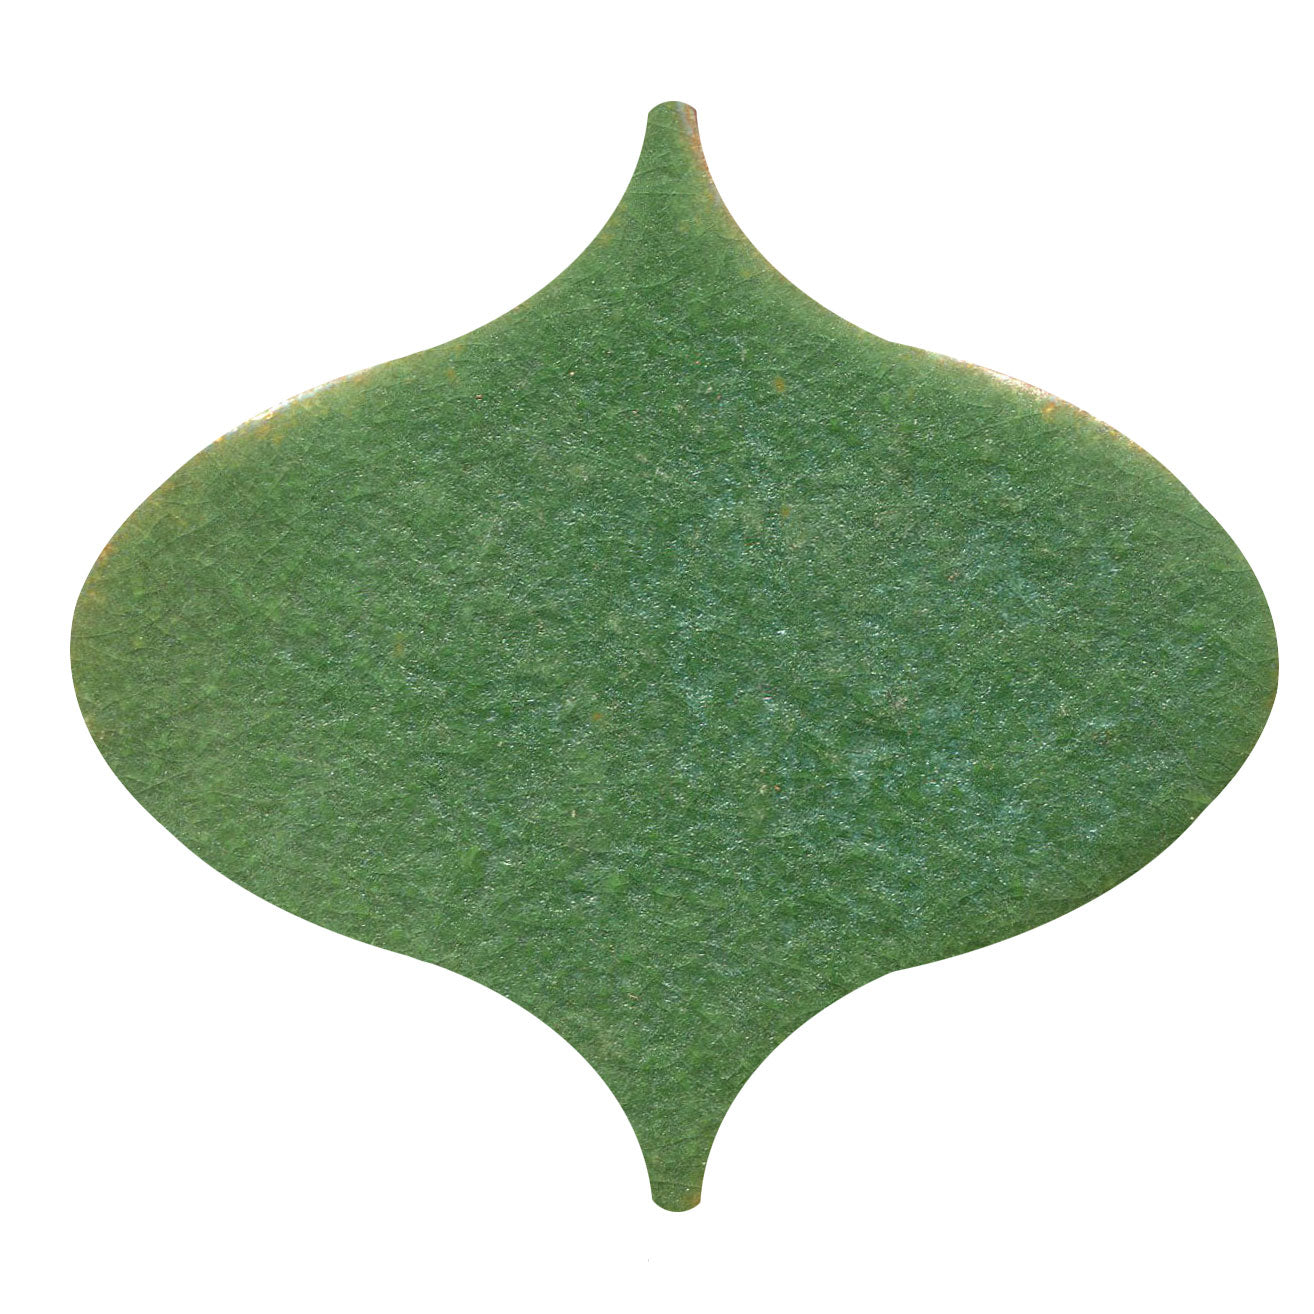 Persian shape tile Avocado